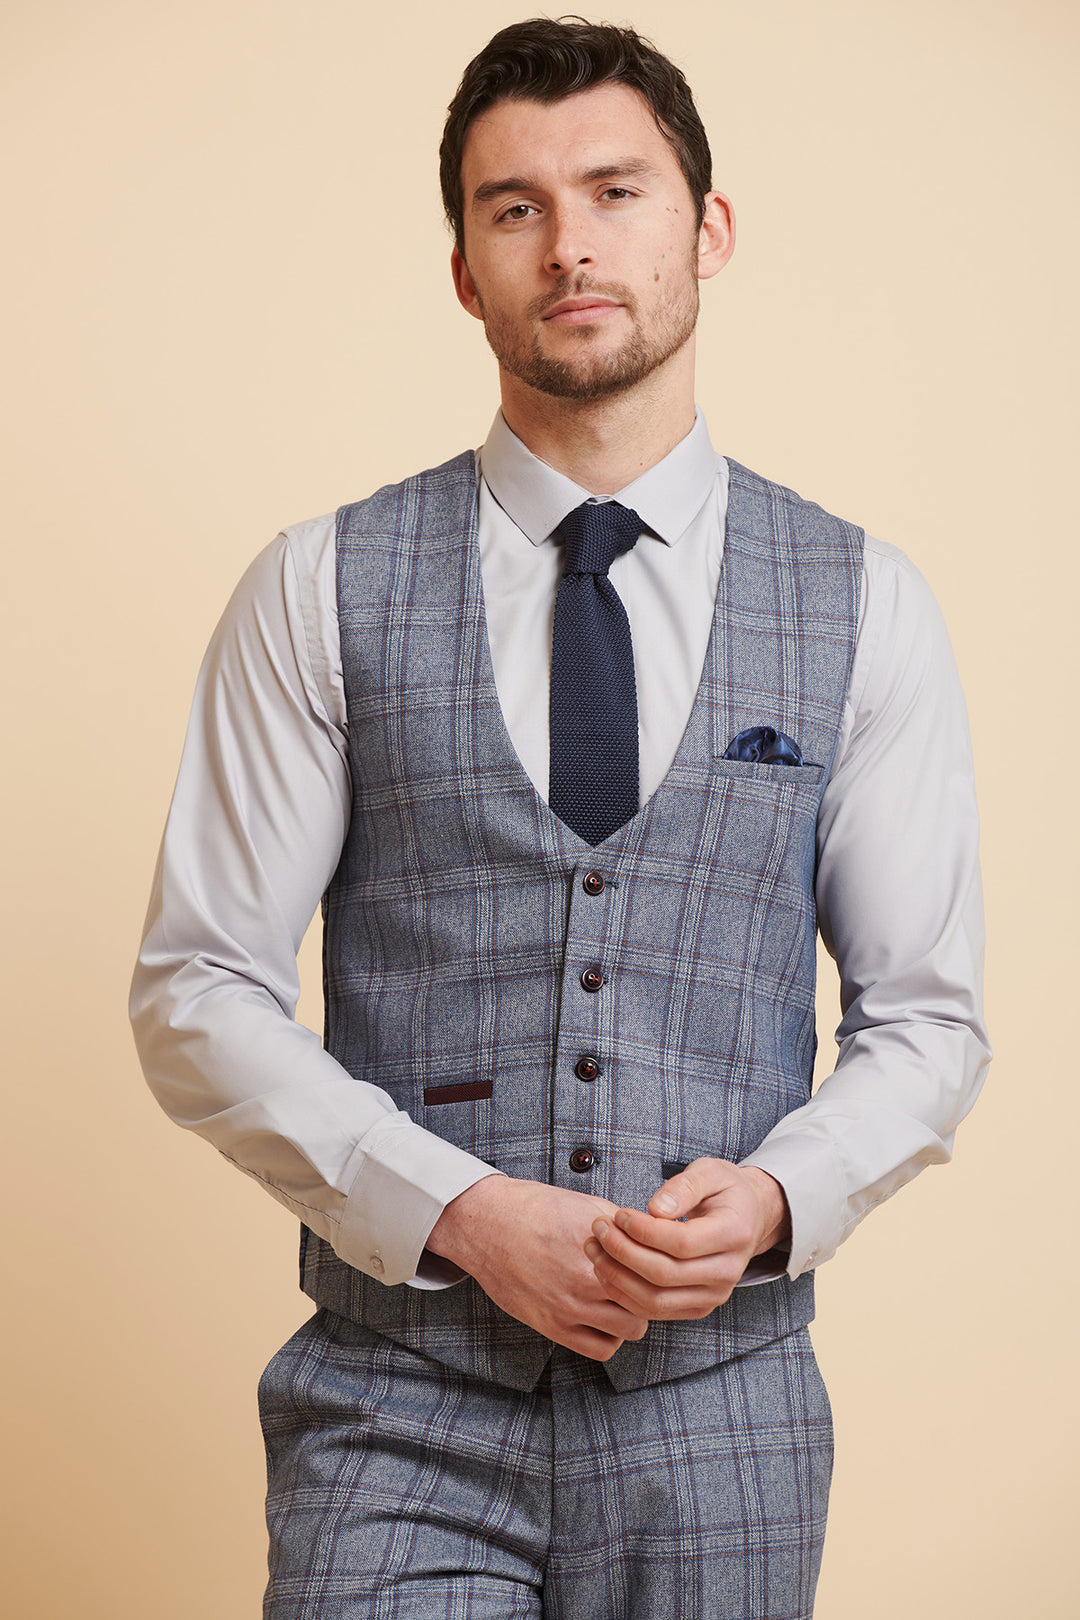 ABBOTT - Blue Tweed Check Three Piece Suit